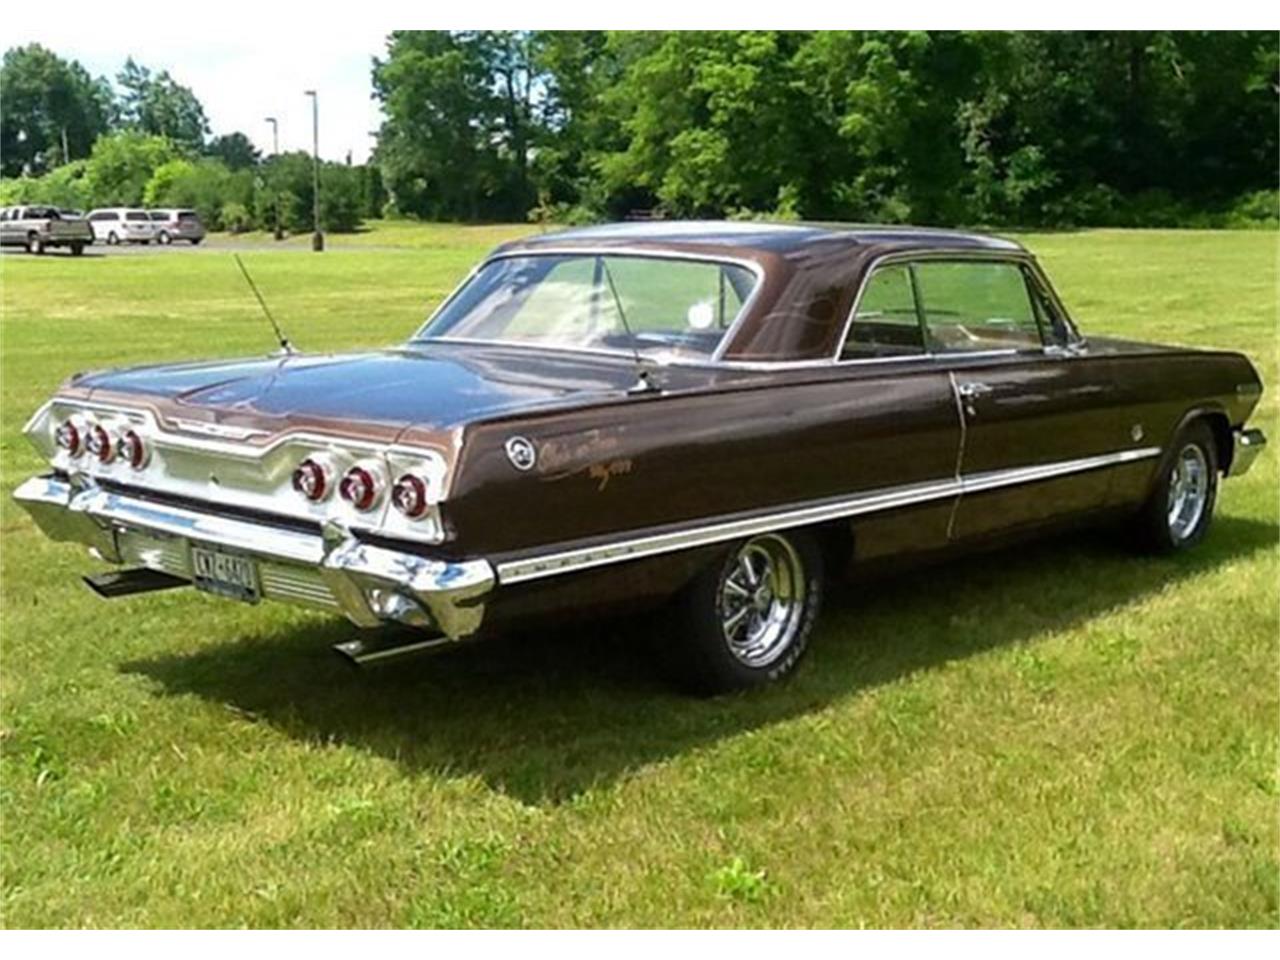 1963 Chevrolet Impala SS for Sale | ClassicCars.com | CC-1001193